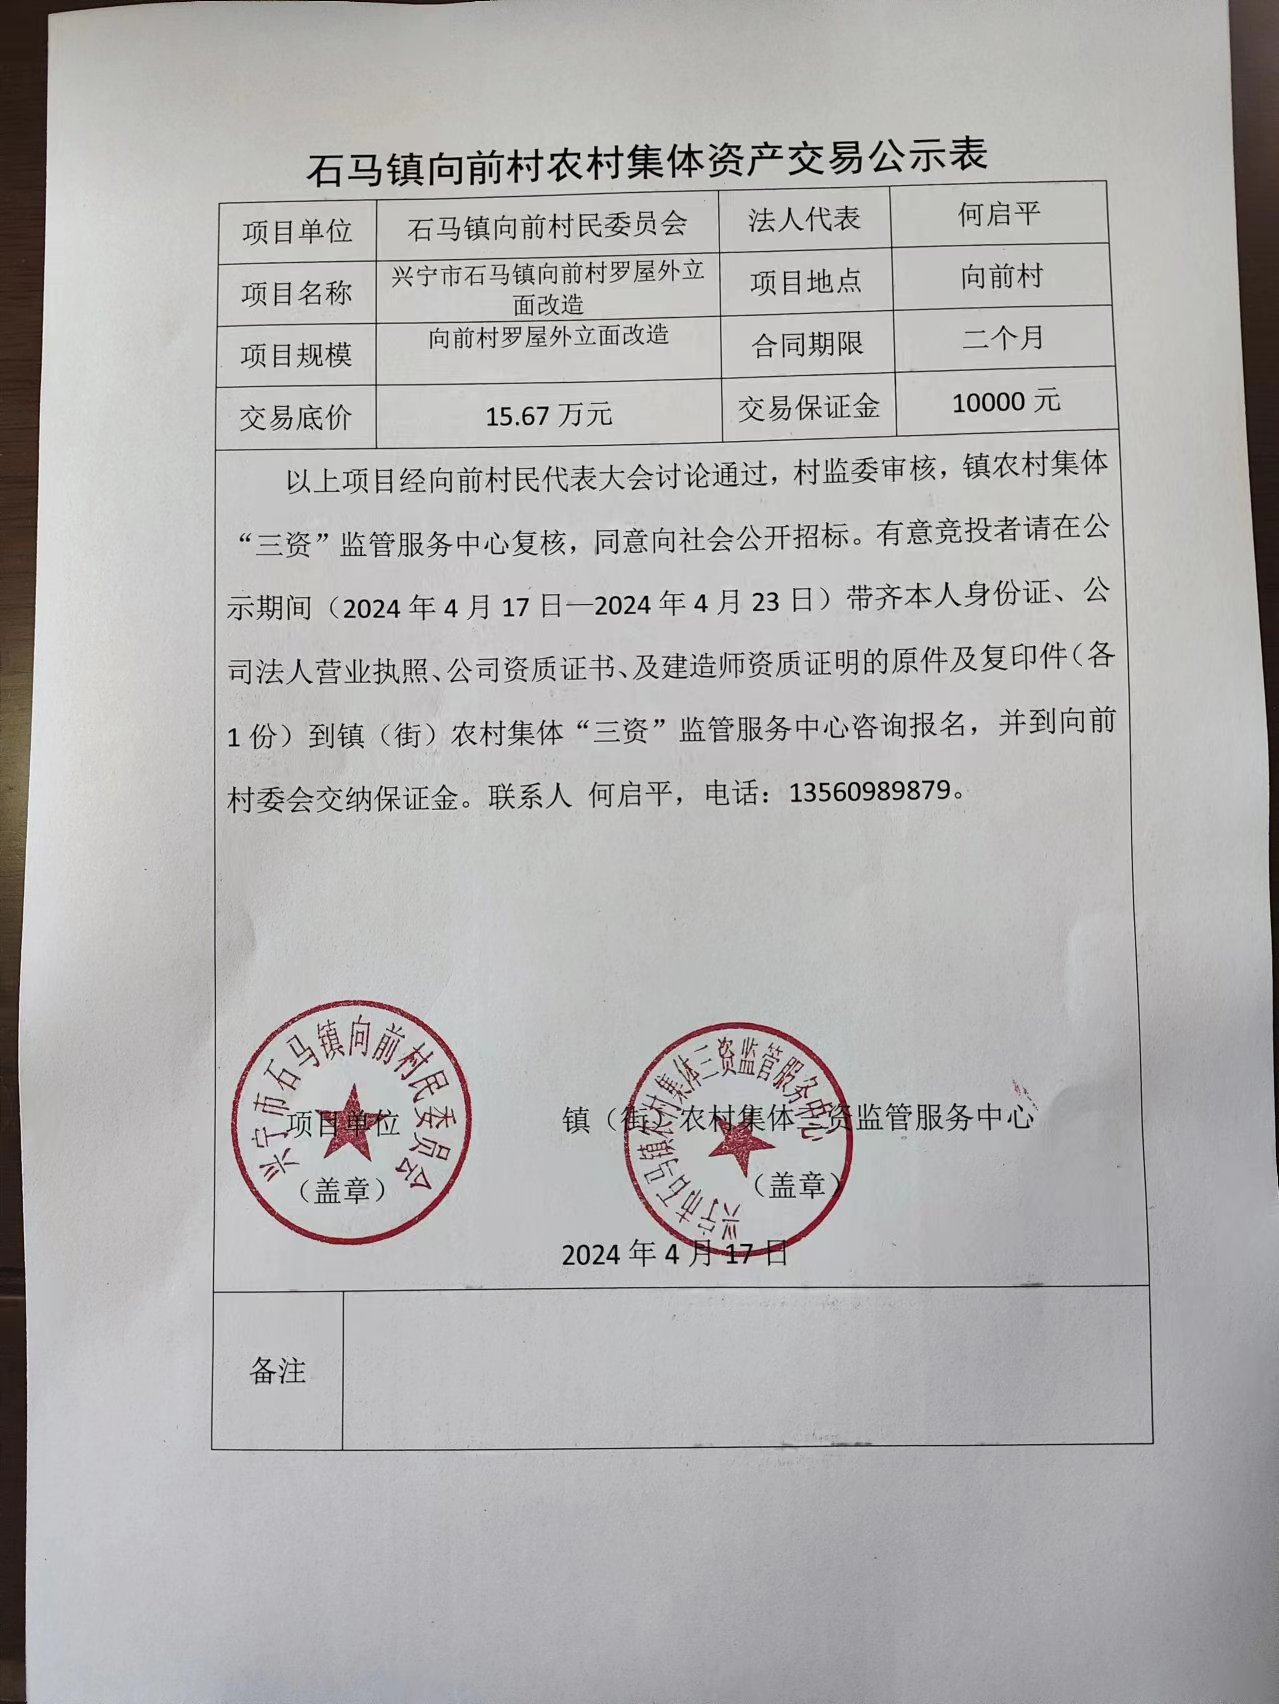 石马镇向前村农村集体资产交易公示表2024.4.17.jpg